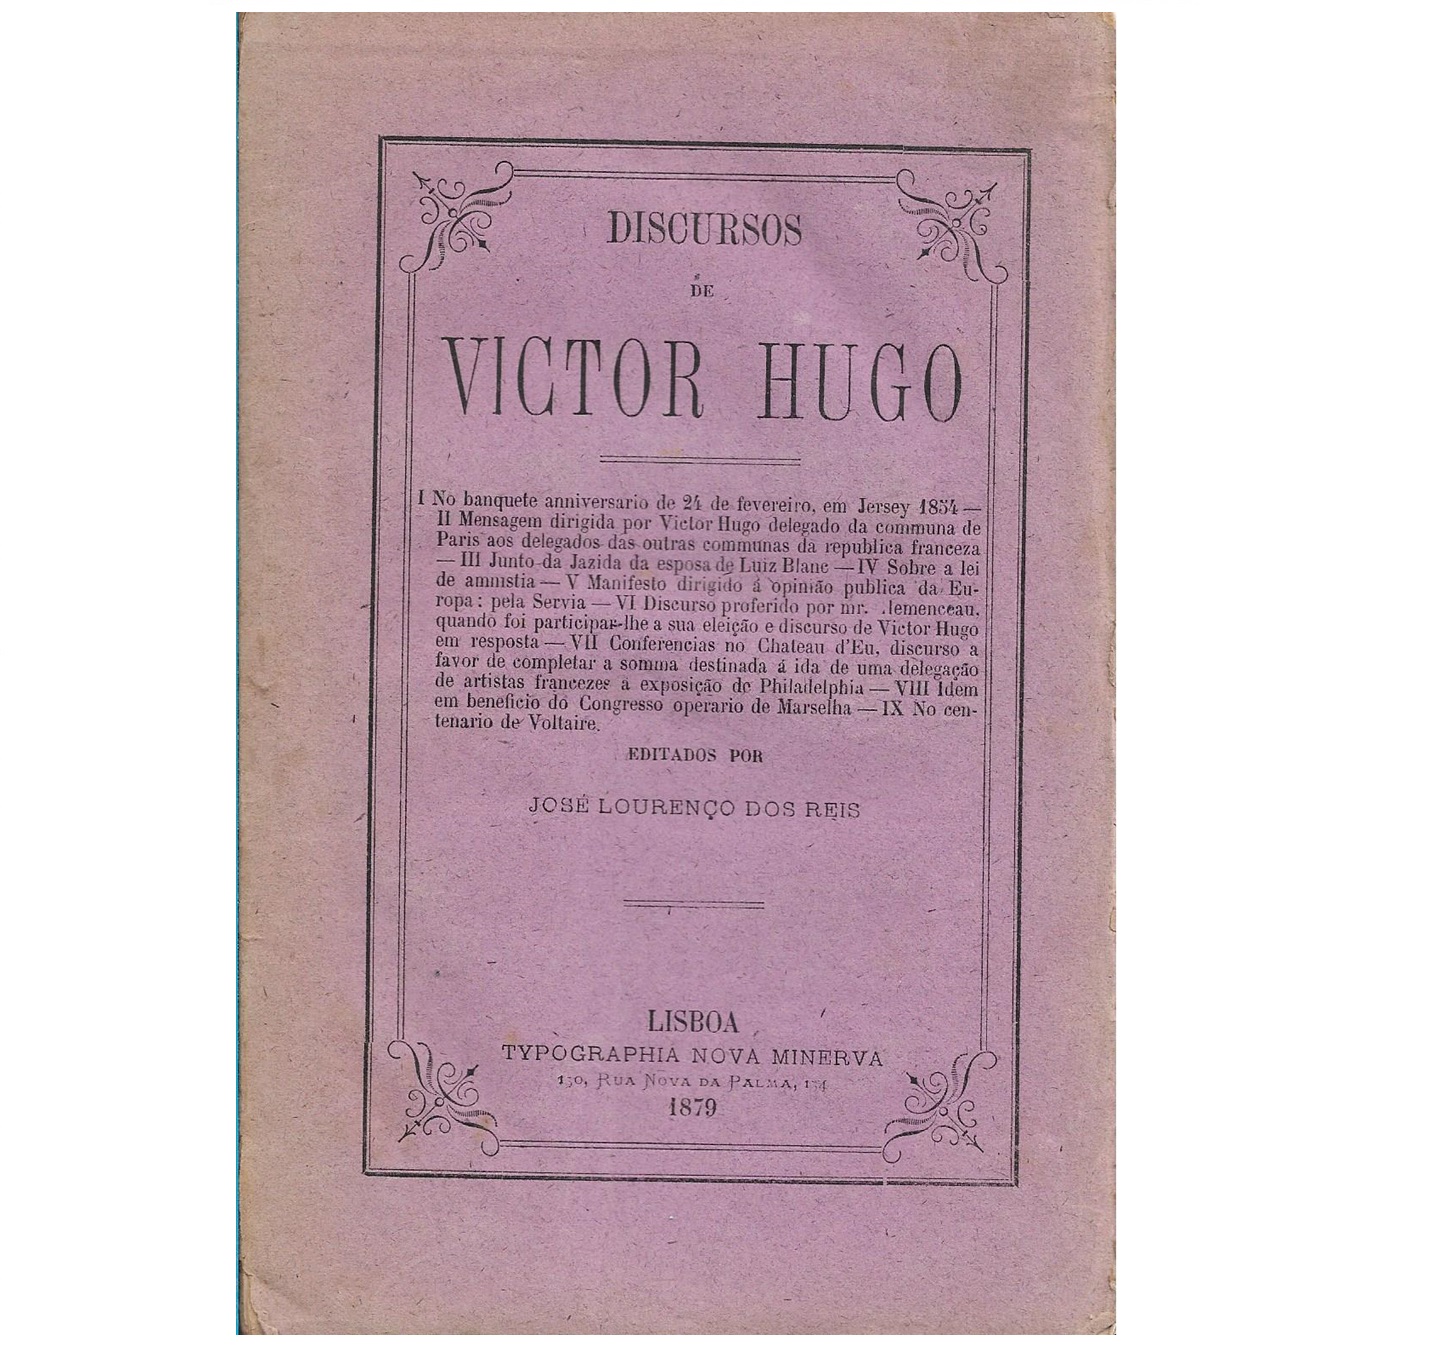 DISCURSOS DE VICTOR HUGO [1879]